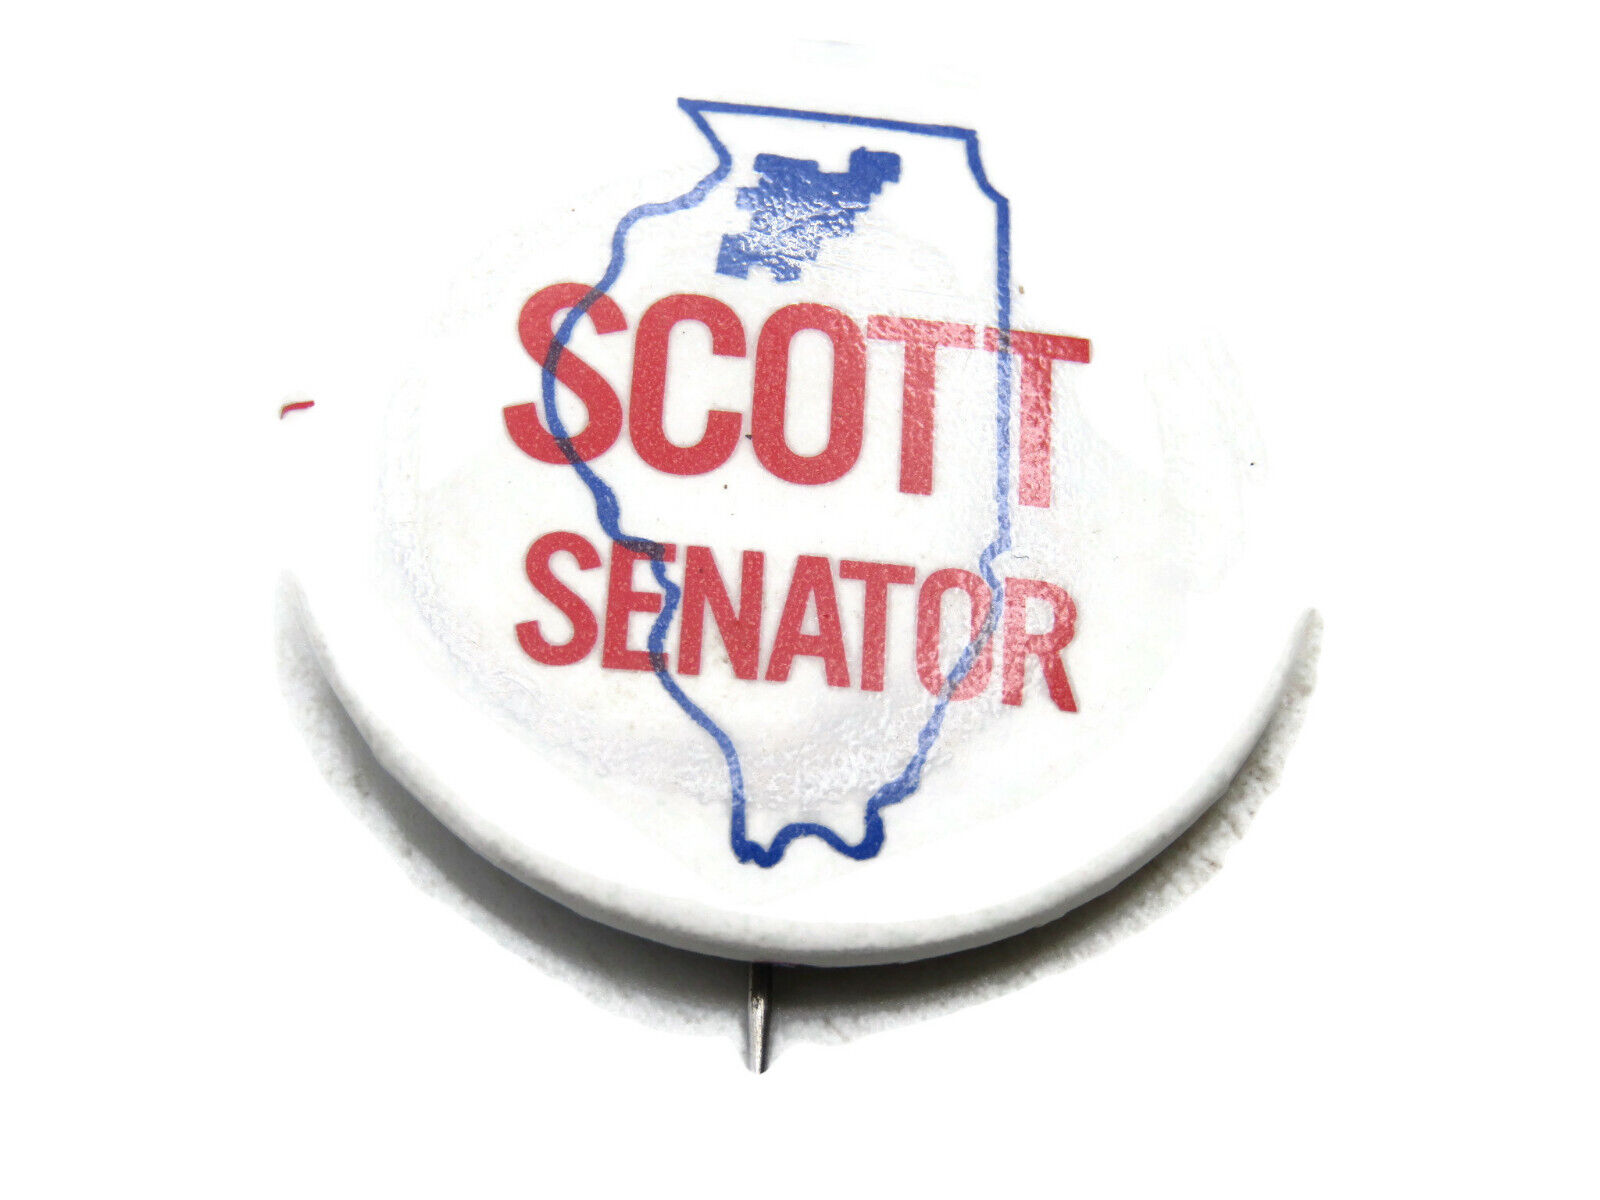 Scott Senator Campaign Button Illinois